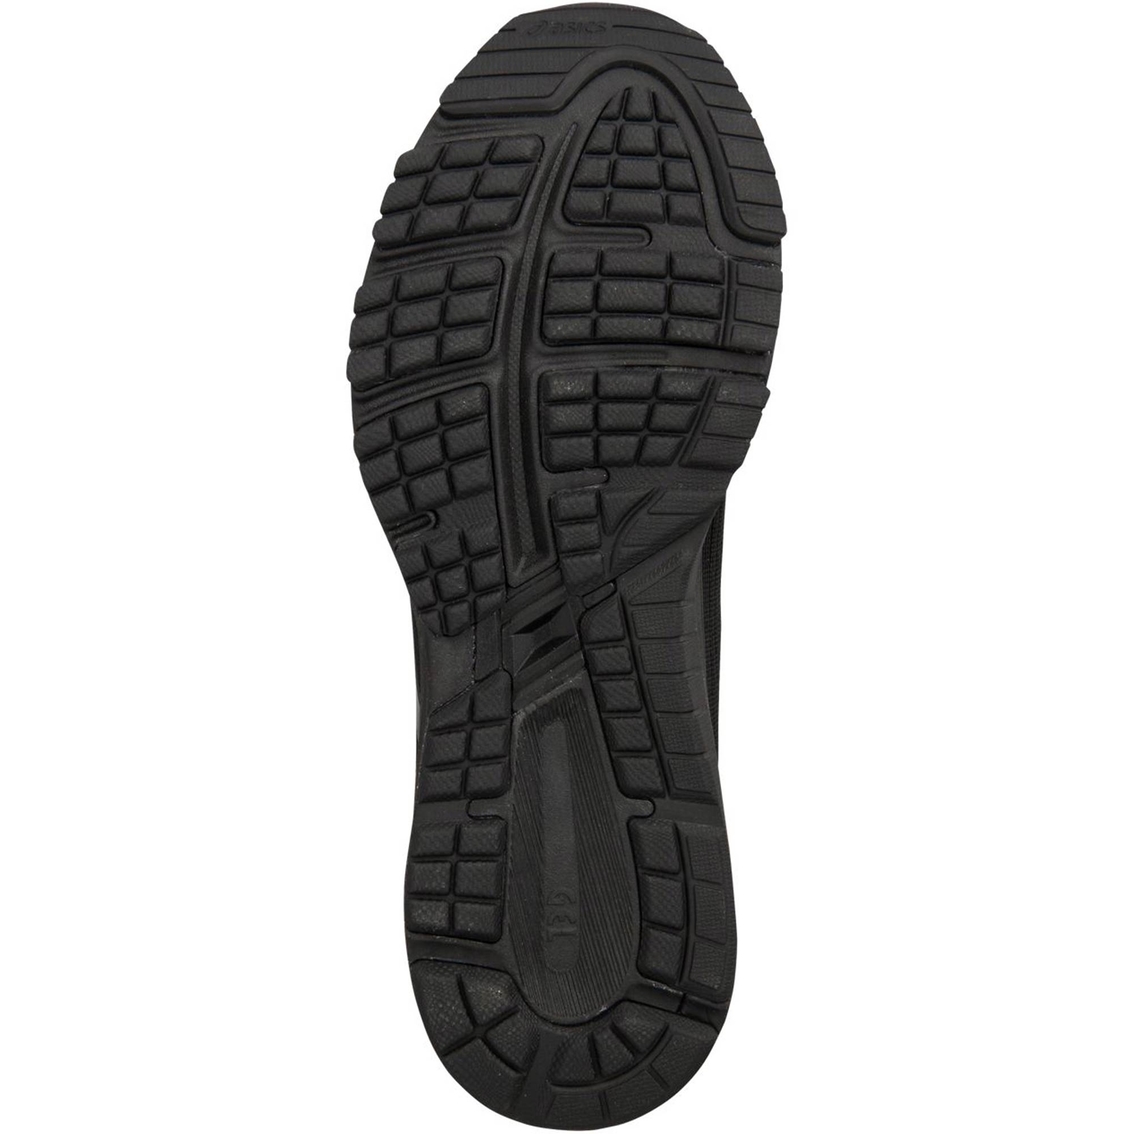 Asics Men's Gt 1000 7 Running Shoes | Men's Athletic Shoes | Shoes ...